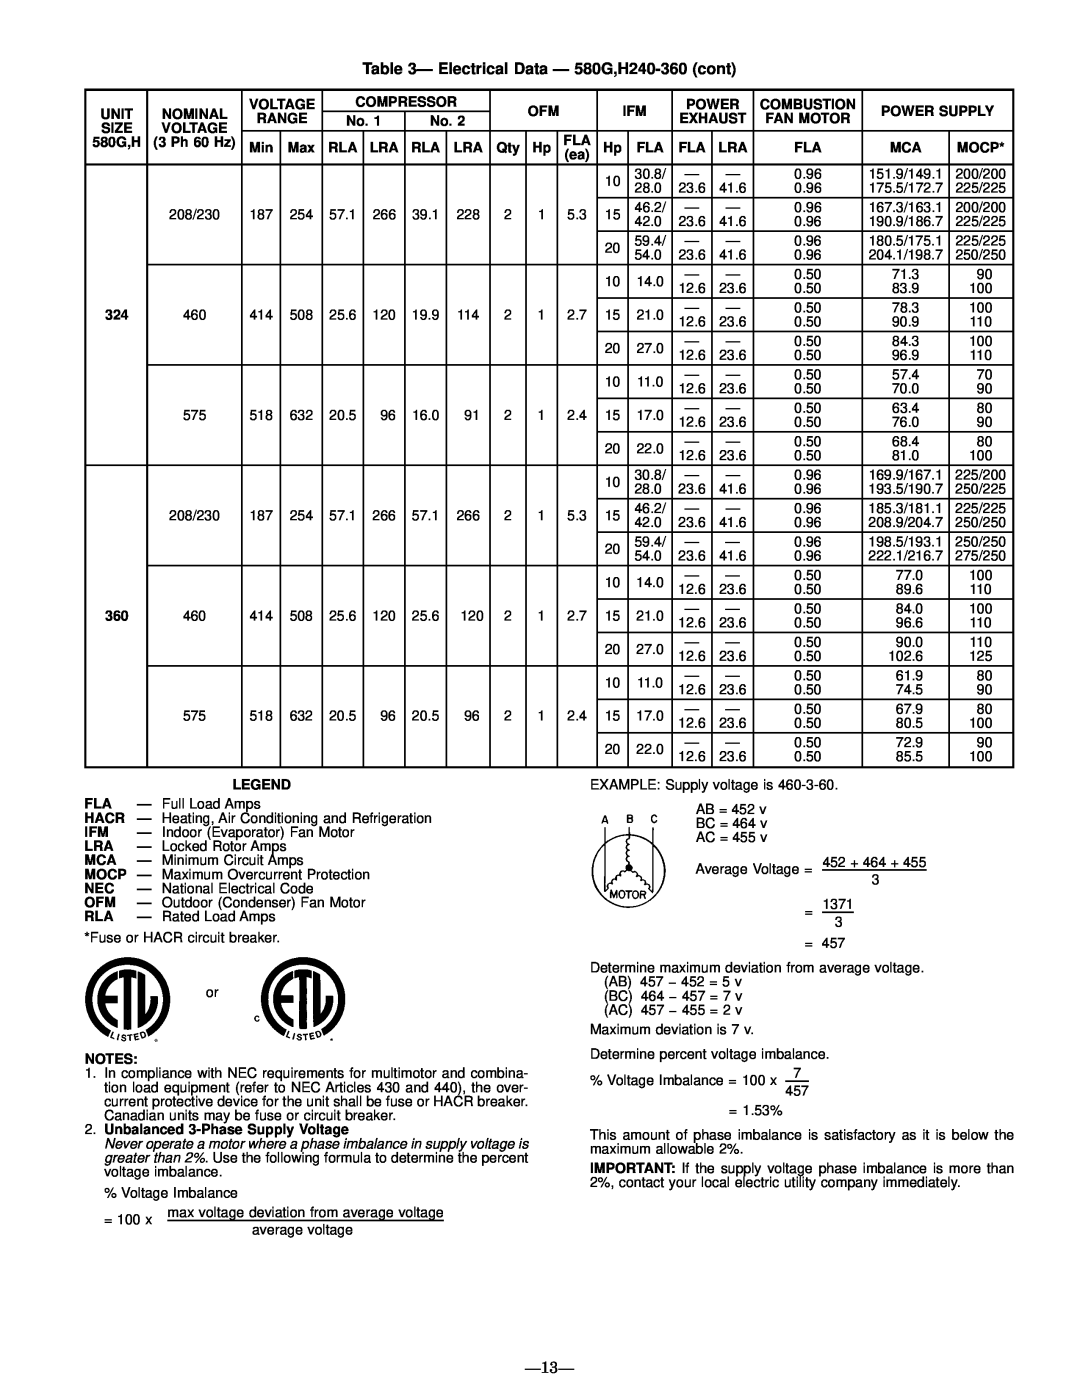 Bryant manual Ð Electrical Data Ð 580G,H240-360cont, Ð13Ð 